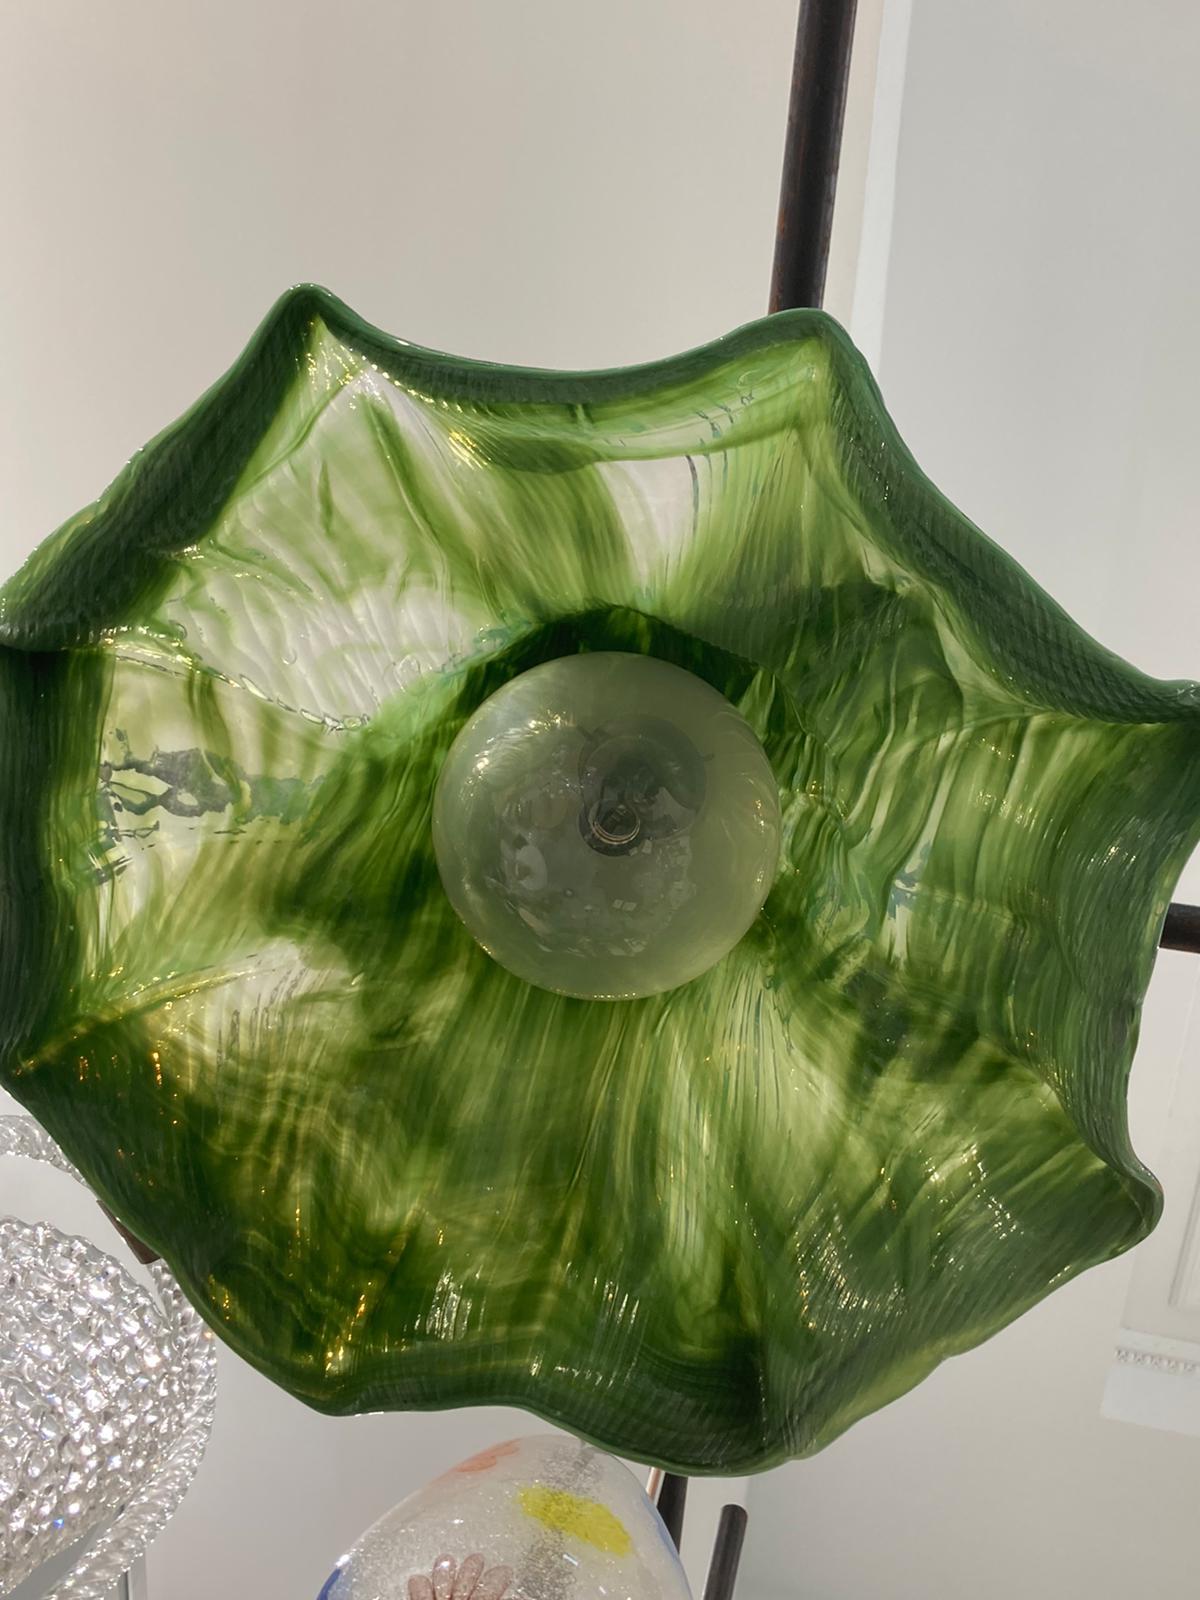 Lampe à suspension Ninfea conçue par Toni Zuccheri pour Venini en 1970.
Le pendentif en verre soufflé de Murano, d'un vert émeraude profond, est traversé par des marbrures de verre clair et blanc, créant ainsi différents niveaux de transparence